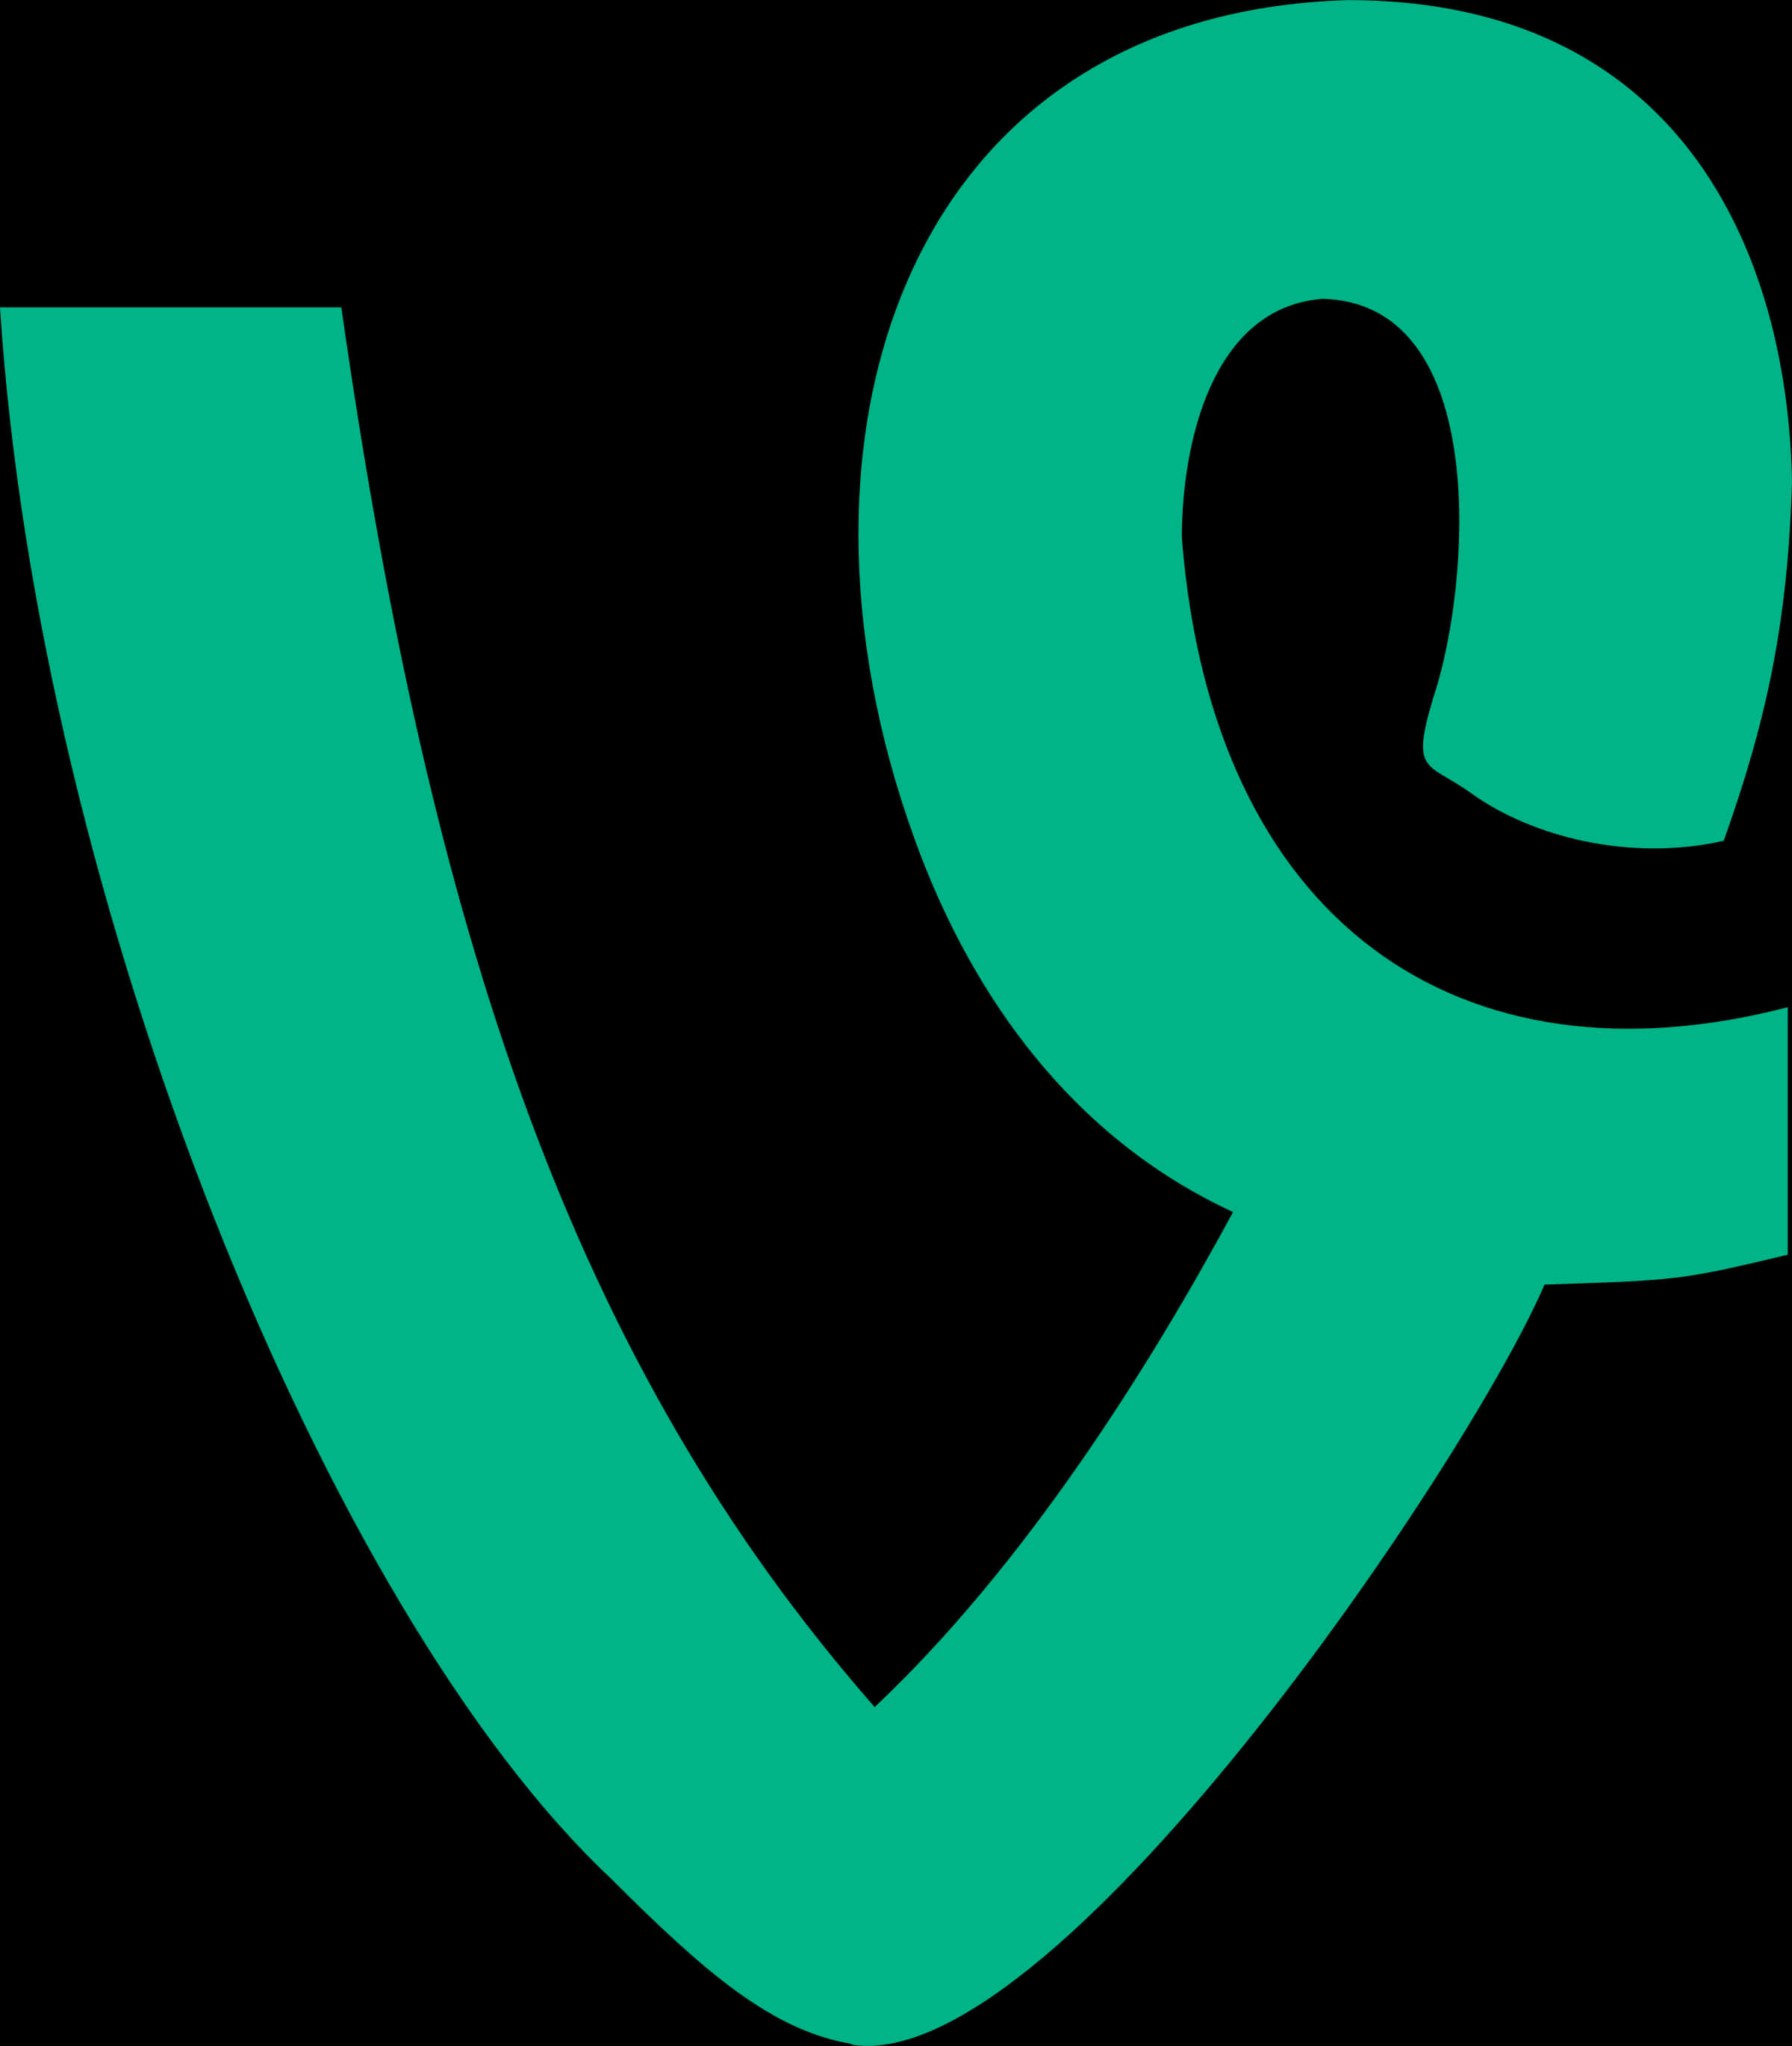 Vine App Logo Green Background PNG image